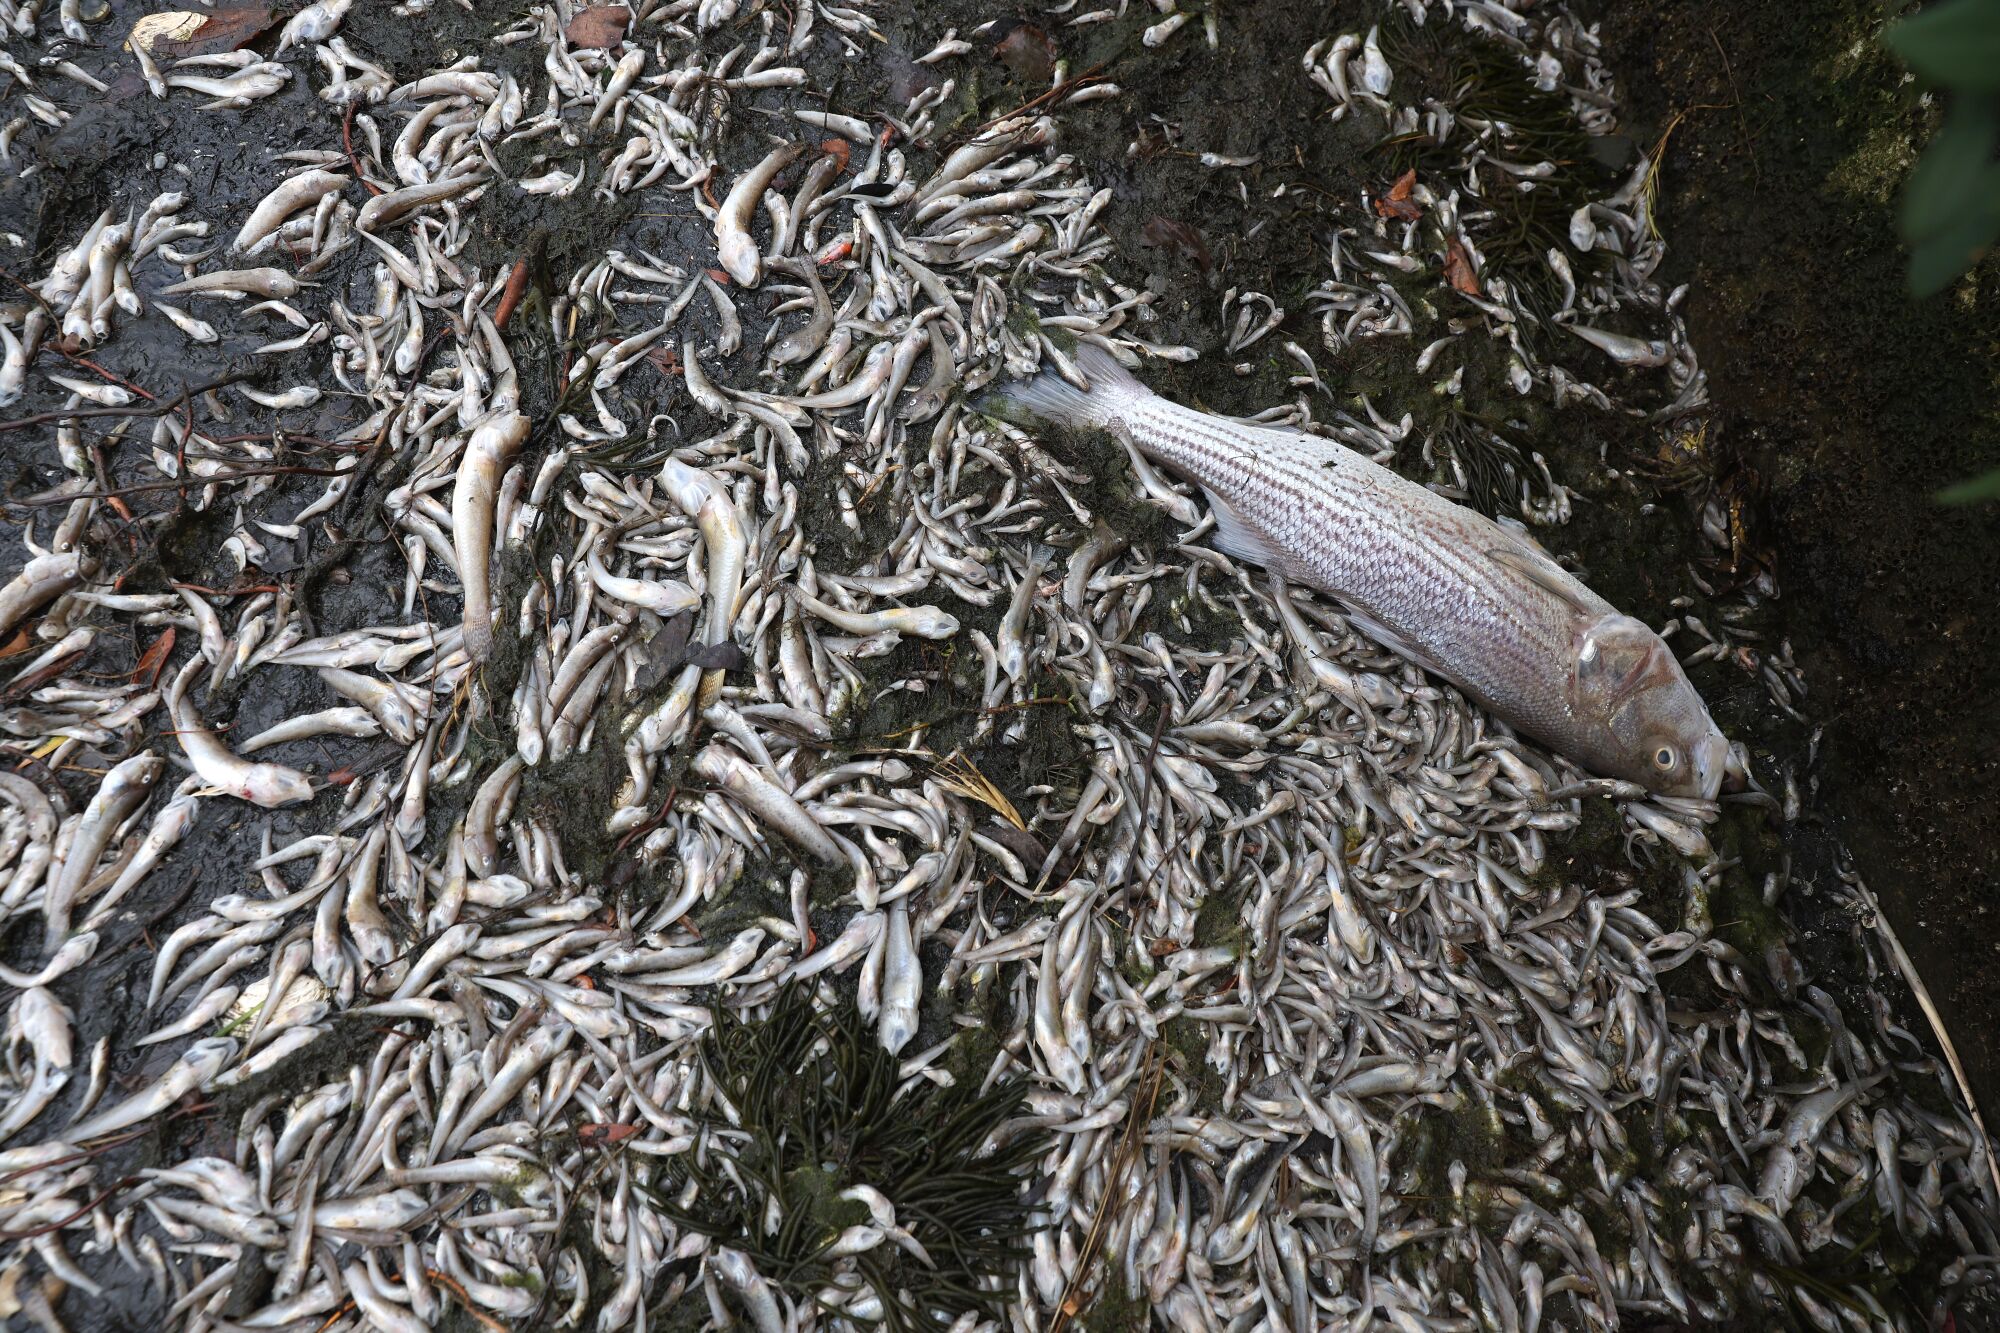 Hundreds of dead fish cover the banks of Lake Merritt in Oakland